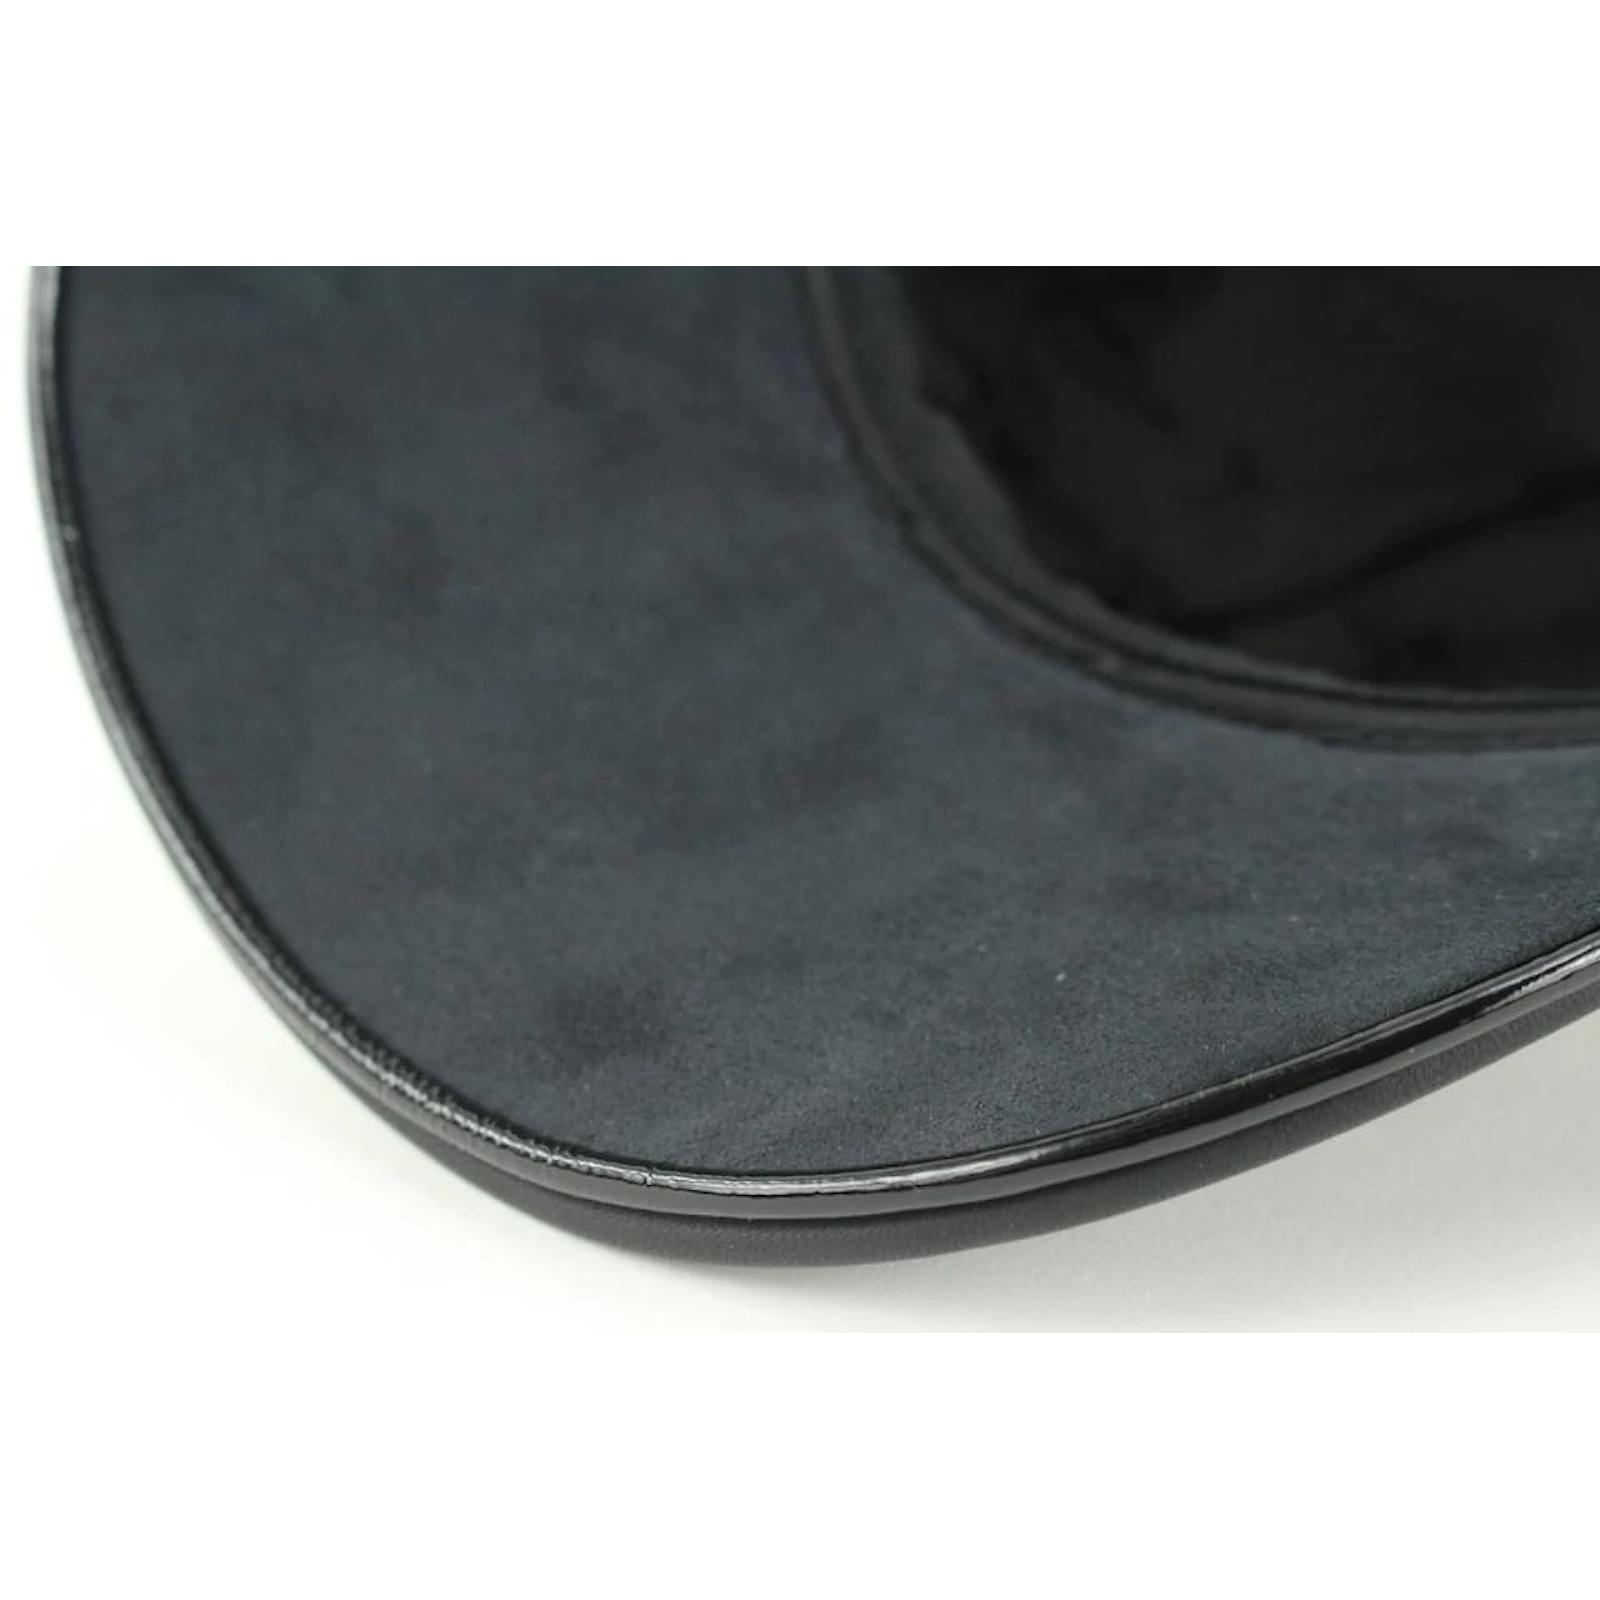 Casquette de baseball Louis Vuitton noir cuir bleu chapeau monogramme damier